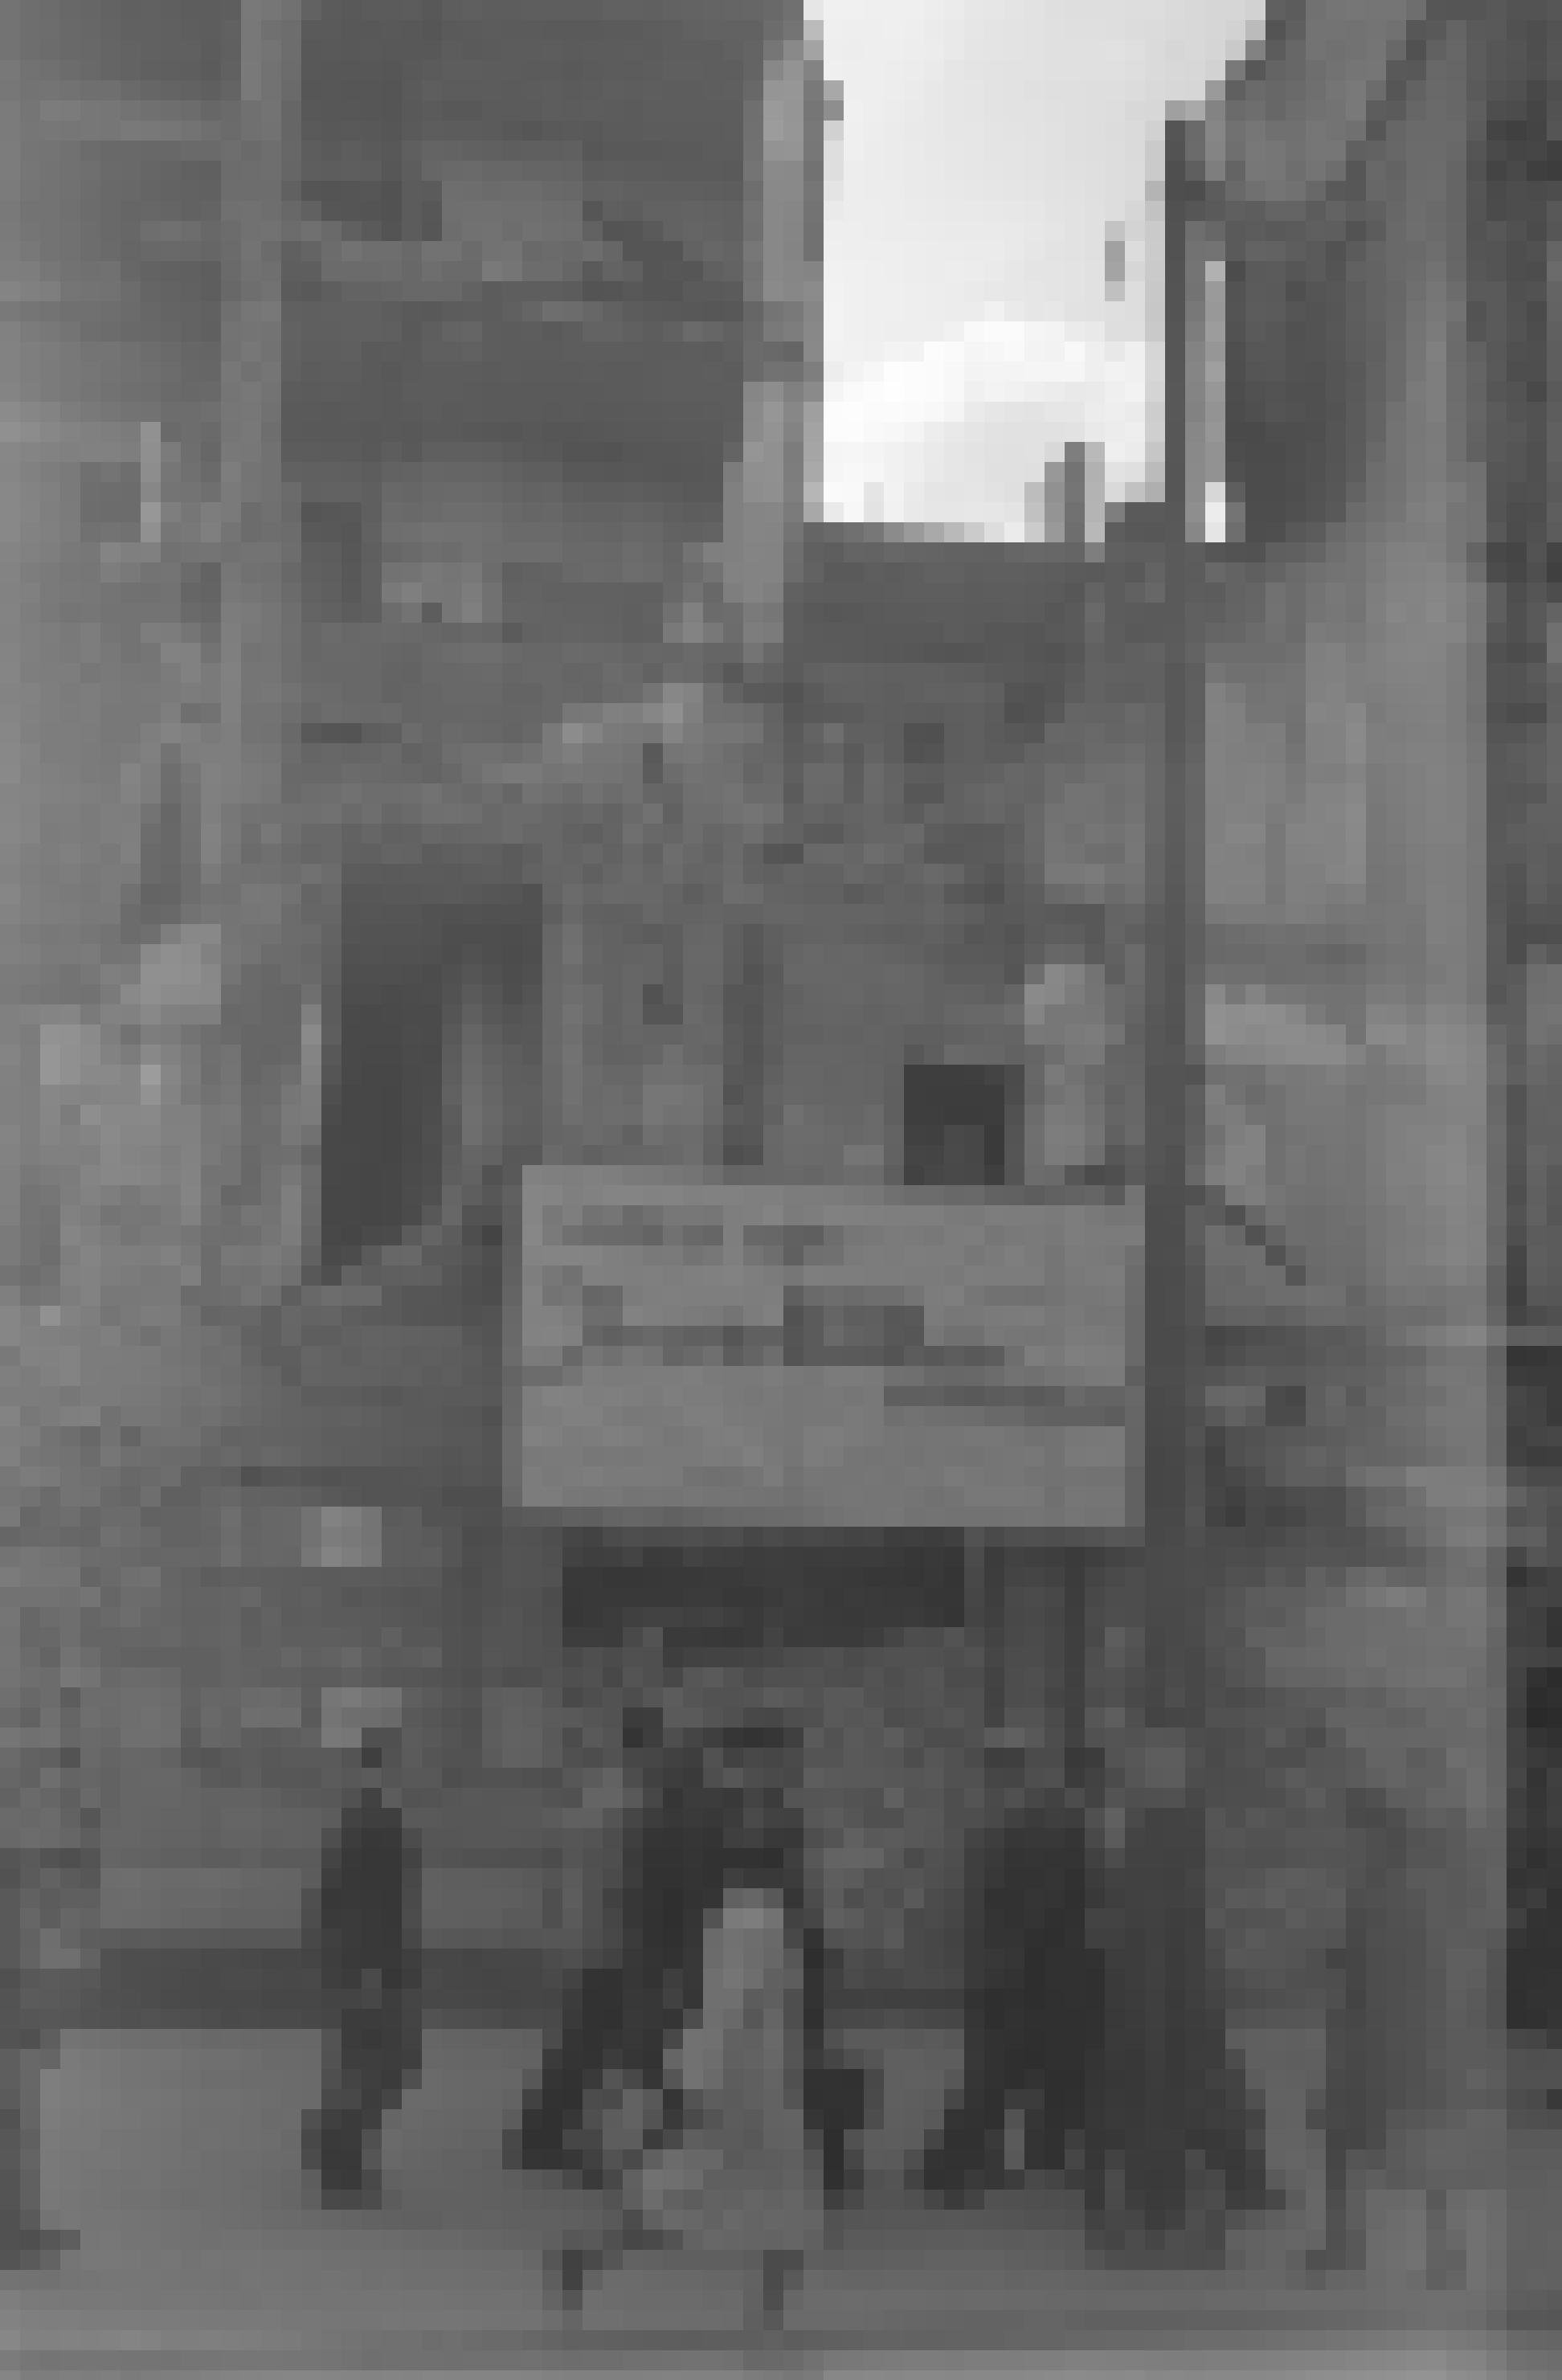 Schwarz-Weiß-Foto mit Passantin, die an Trümmerhaufen vorbeiläuft. Zu sehen ist ein Schild mit einem Zitat von Goebbels: „Ihr werdet Berlin nicht wiedererkennen.“